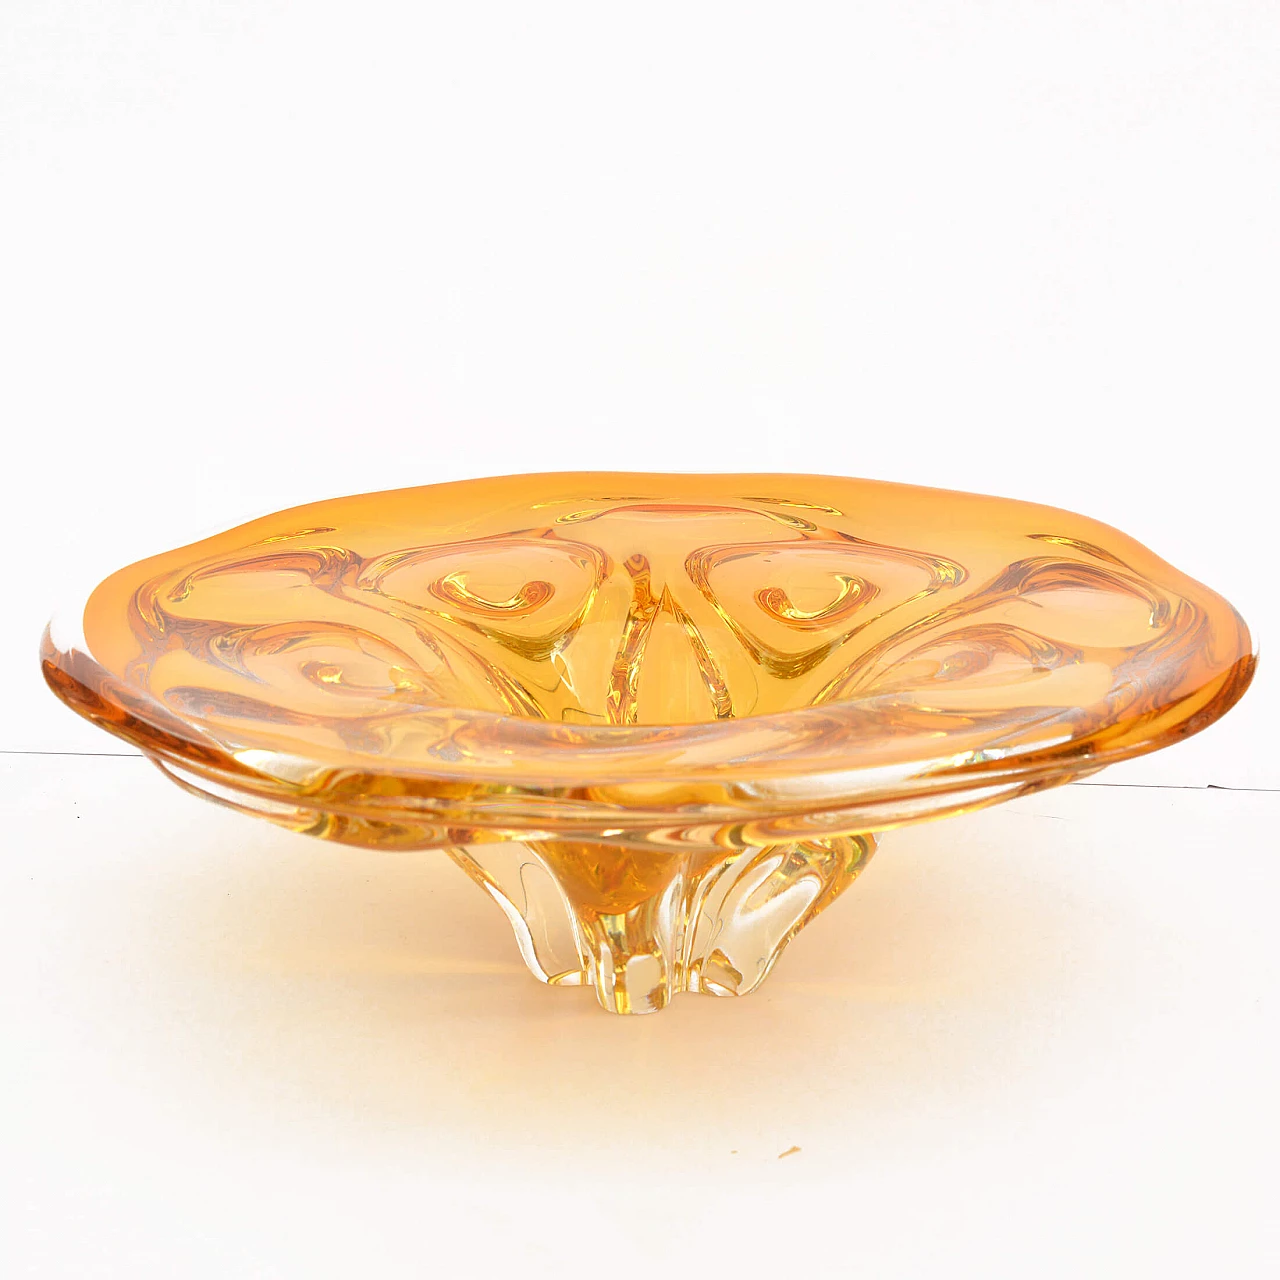 Hospodka crystal dish for Chribska Sklarna, 1960s 10